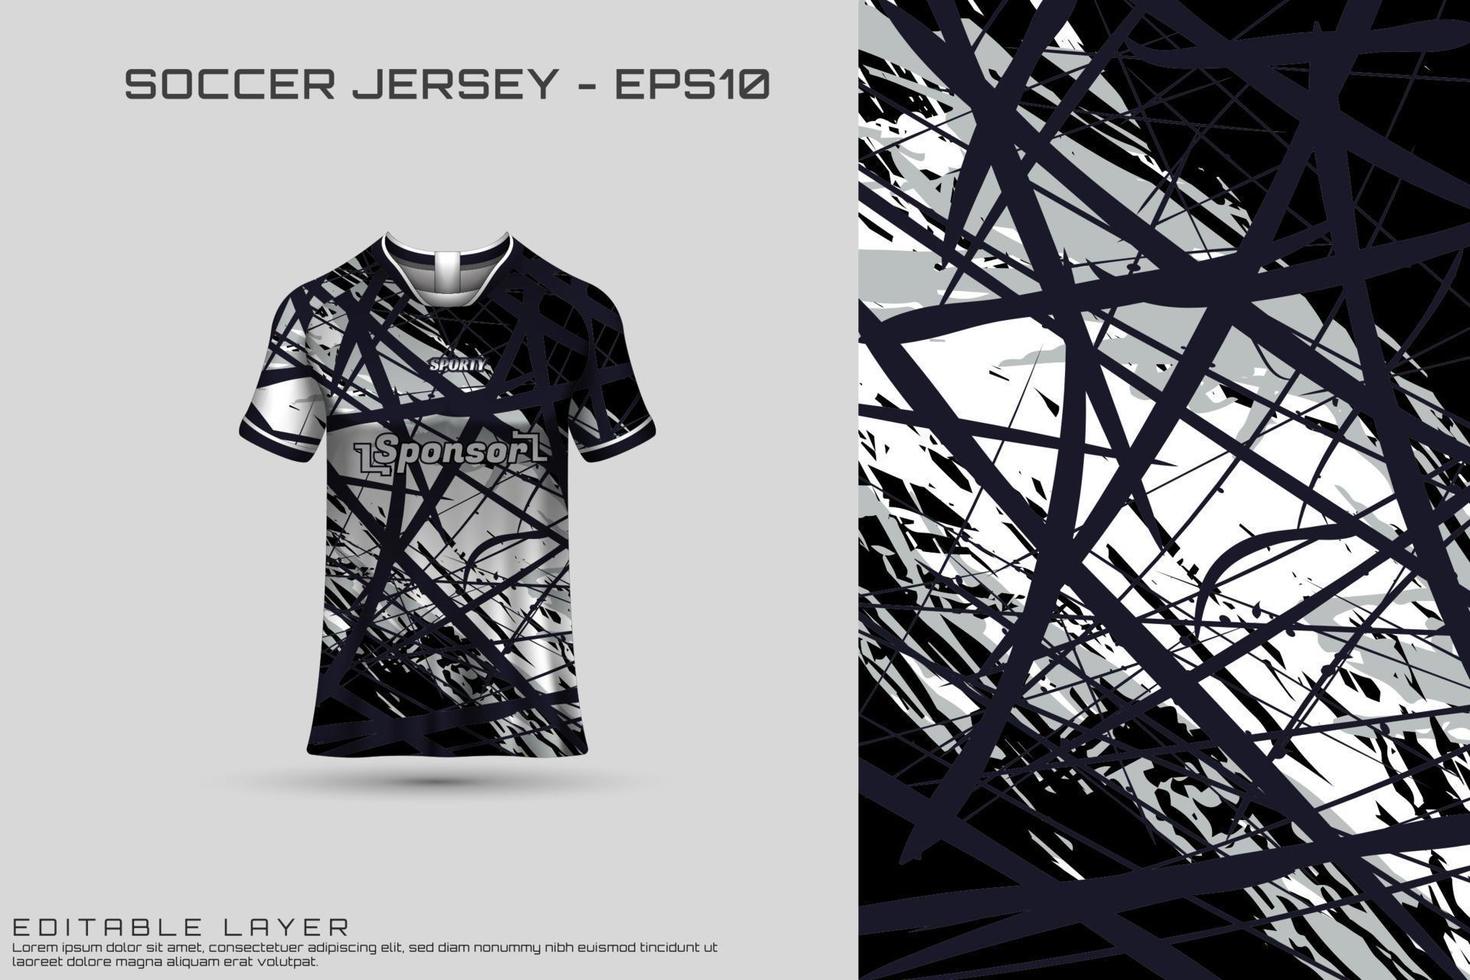 camiseta deportiva y plantilla de camiseta vector de diseño de camiseta deportiva. diseño deportivo para fútbol, carreras, camisetas de juego. vector.